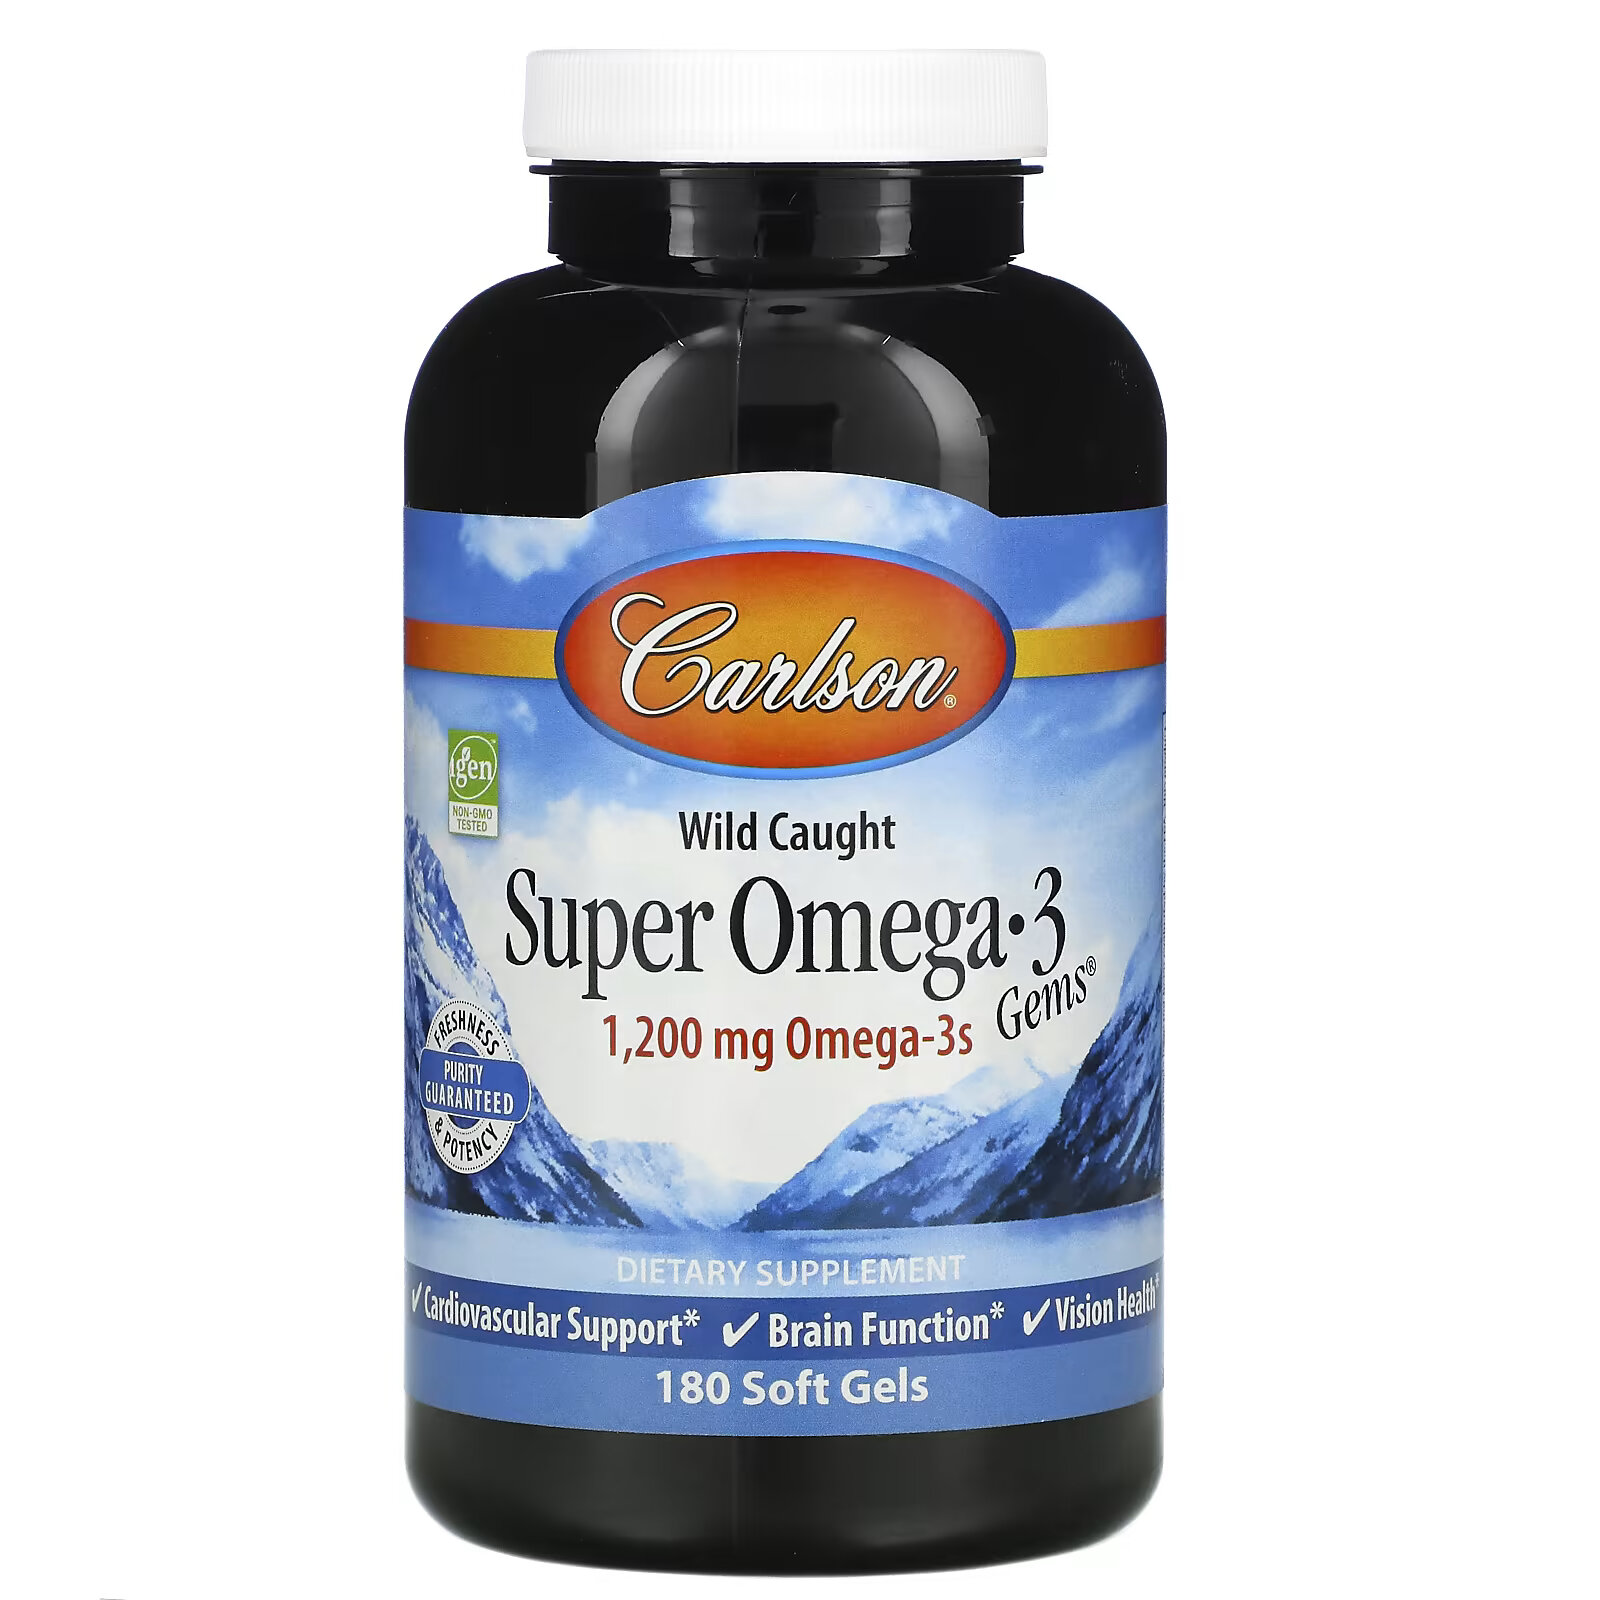 Carlson, Wild Caught Super Omega-3 Gems, высокоэффективная омега-3 из морской рыбы, 600 мг, 180 мягких капсул carlson labs norwegian super omega 3 gems высокоэффективные омега 3 кислоты 600 мг 180 капсул